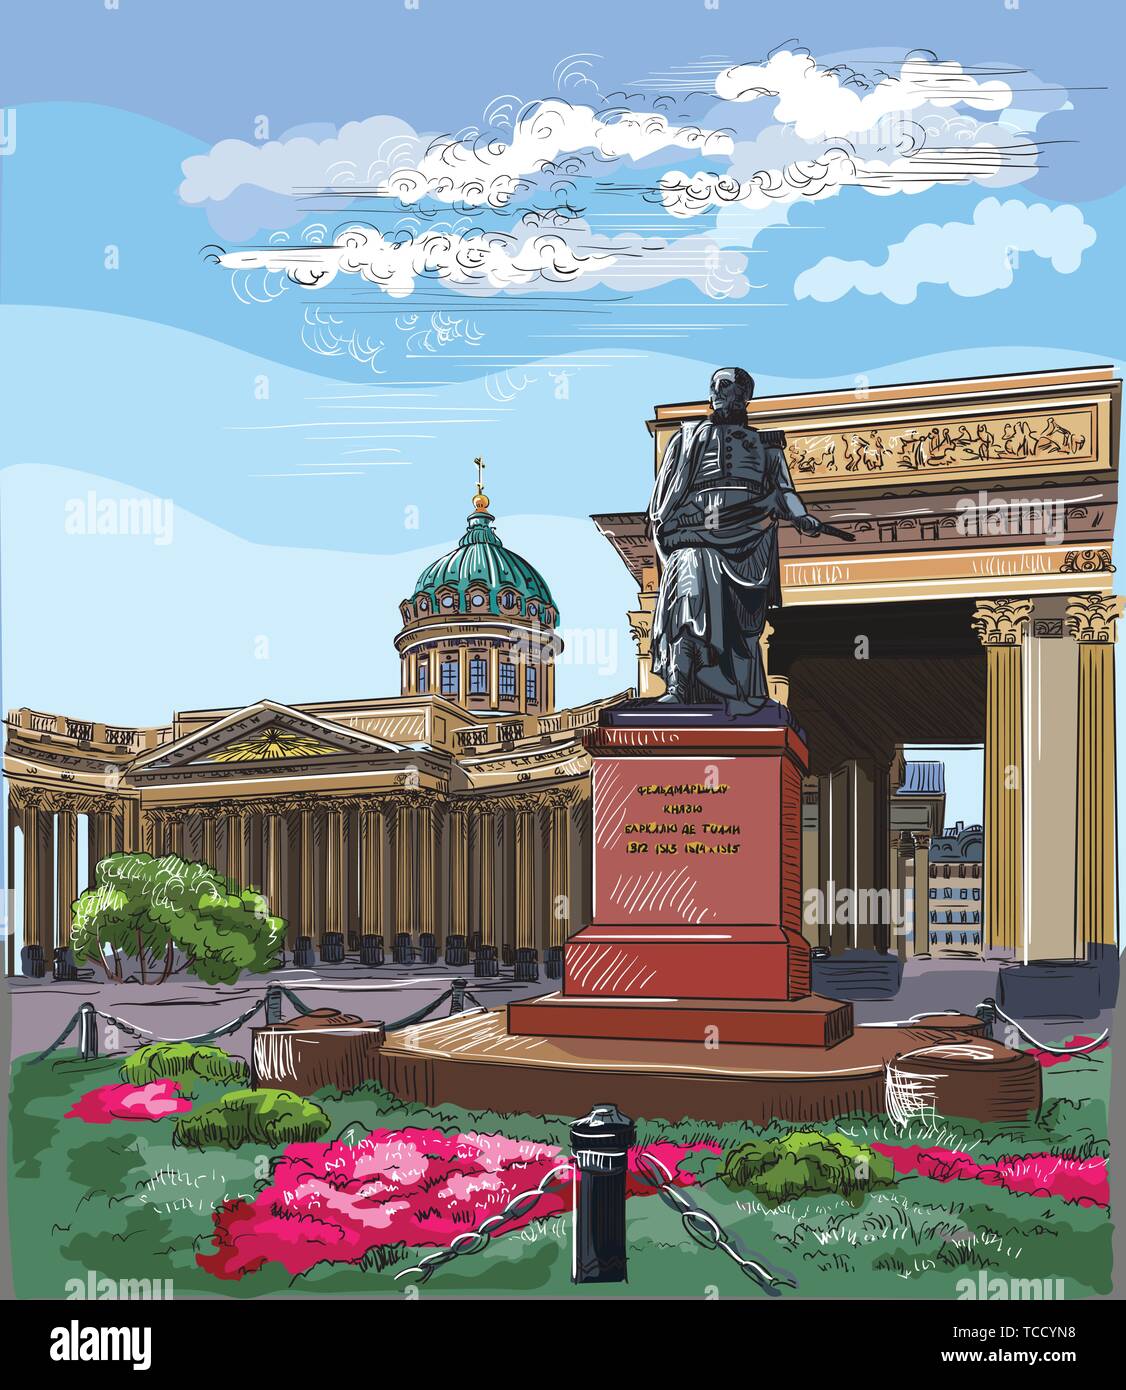 Stadtbild von der Kazan Kathedrale in St. Petersburg, Russland und Denkmal für Barclay de Tolly. Bunte Vektor hand Zeichnung Abbildung. Stock Vektor